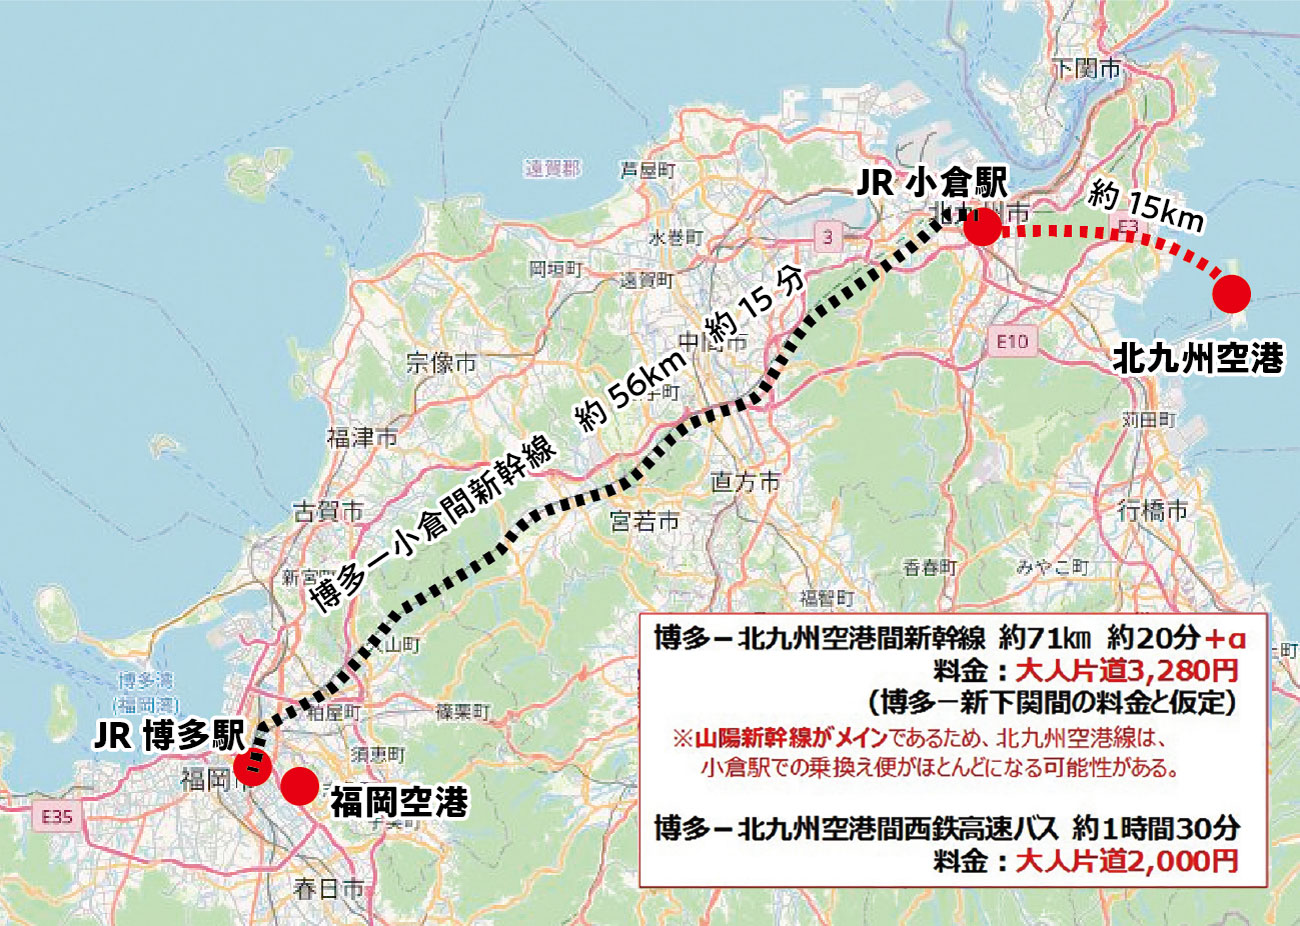 小倉駅から北九州空港まで新幹線を延伸した場合のイメージ